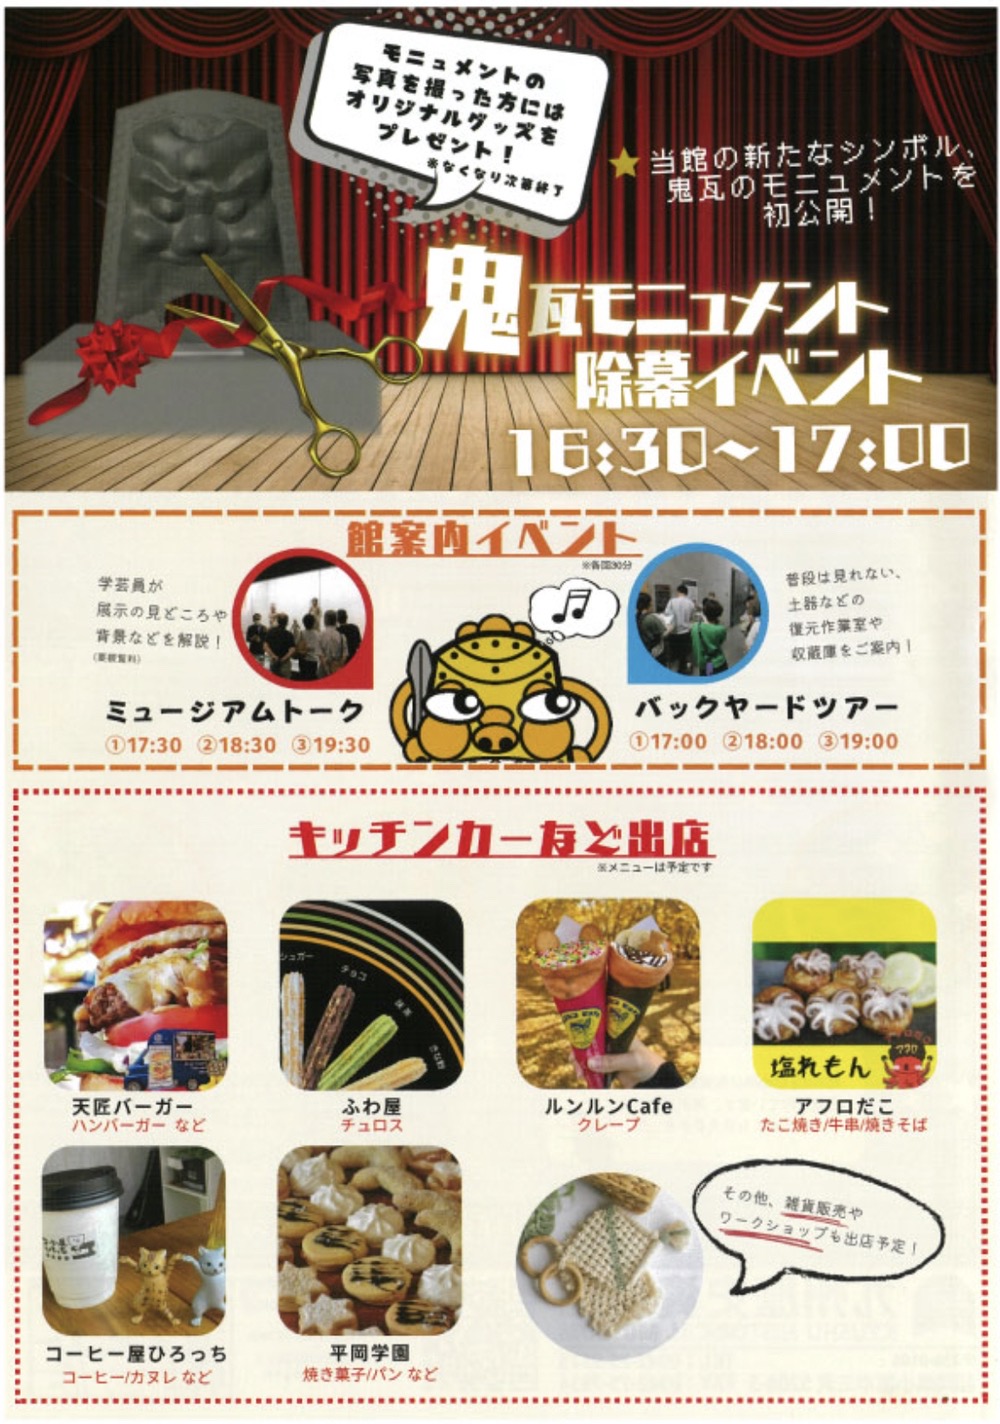 「九州歴史資料館ミュージアムナイト」イベント内容